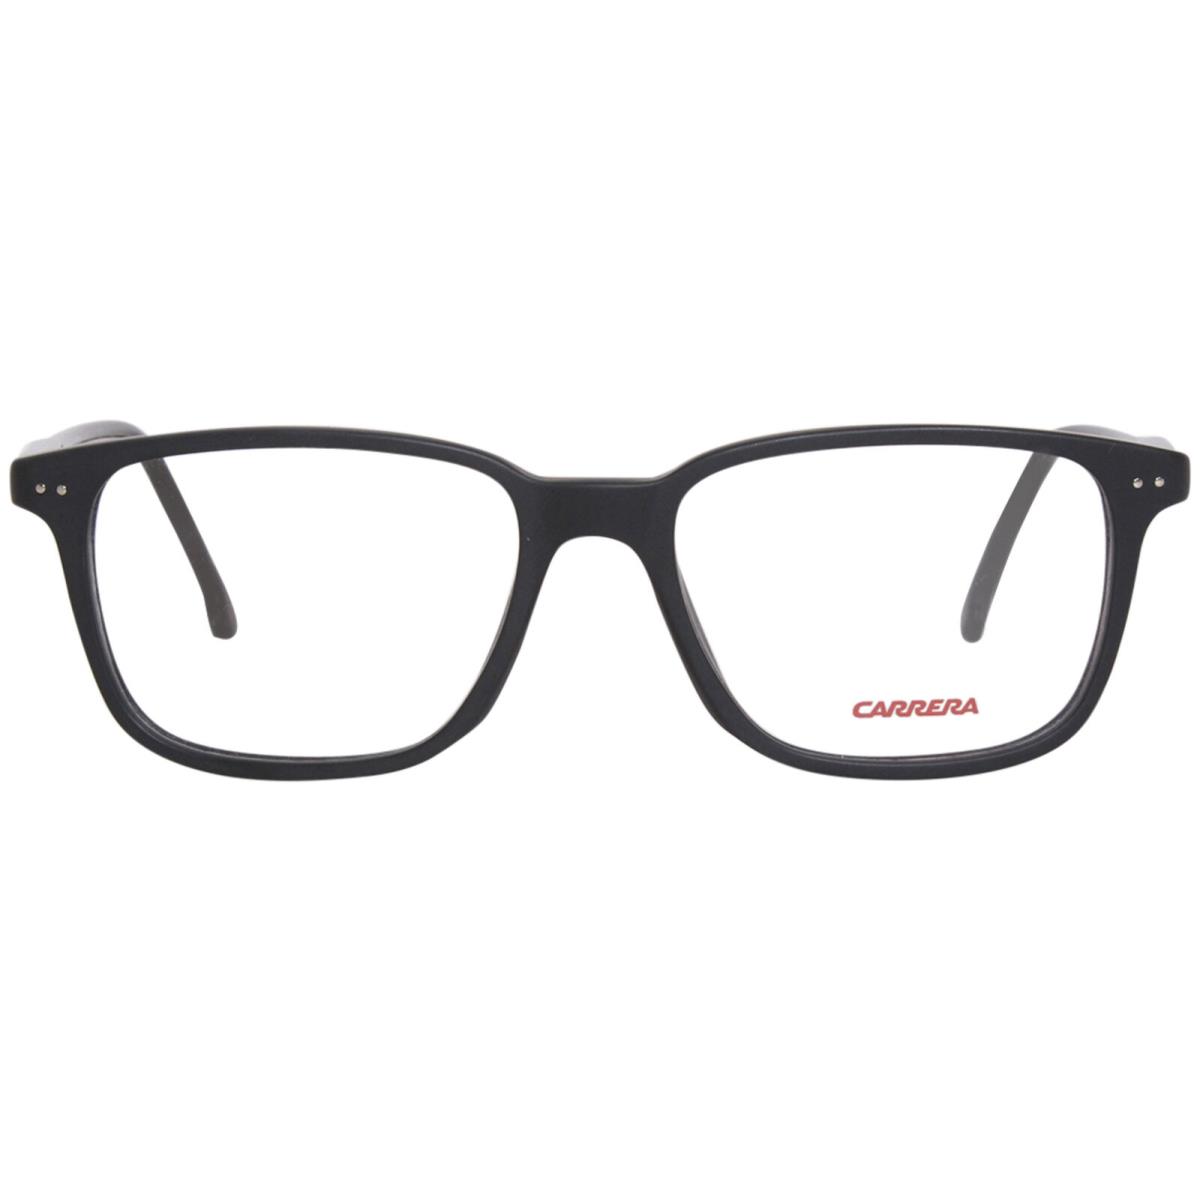 Carrera 213/N 003 Eyeglasses Frame Matte Black Full Rim Rectangle Shape 52mm - Frame: Black